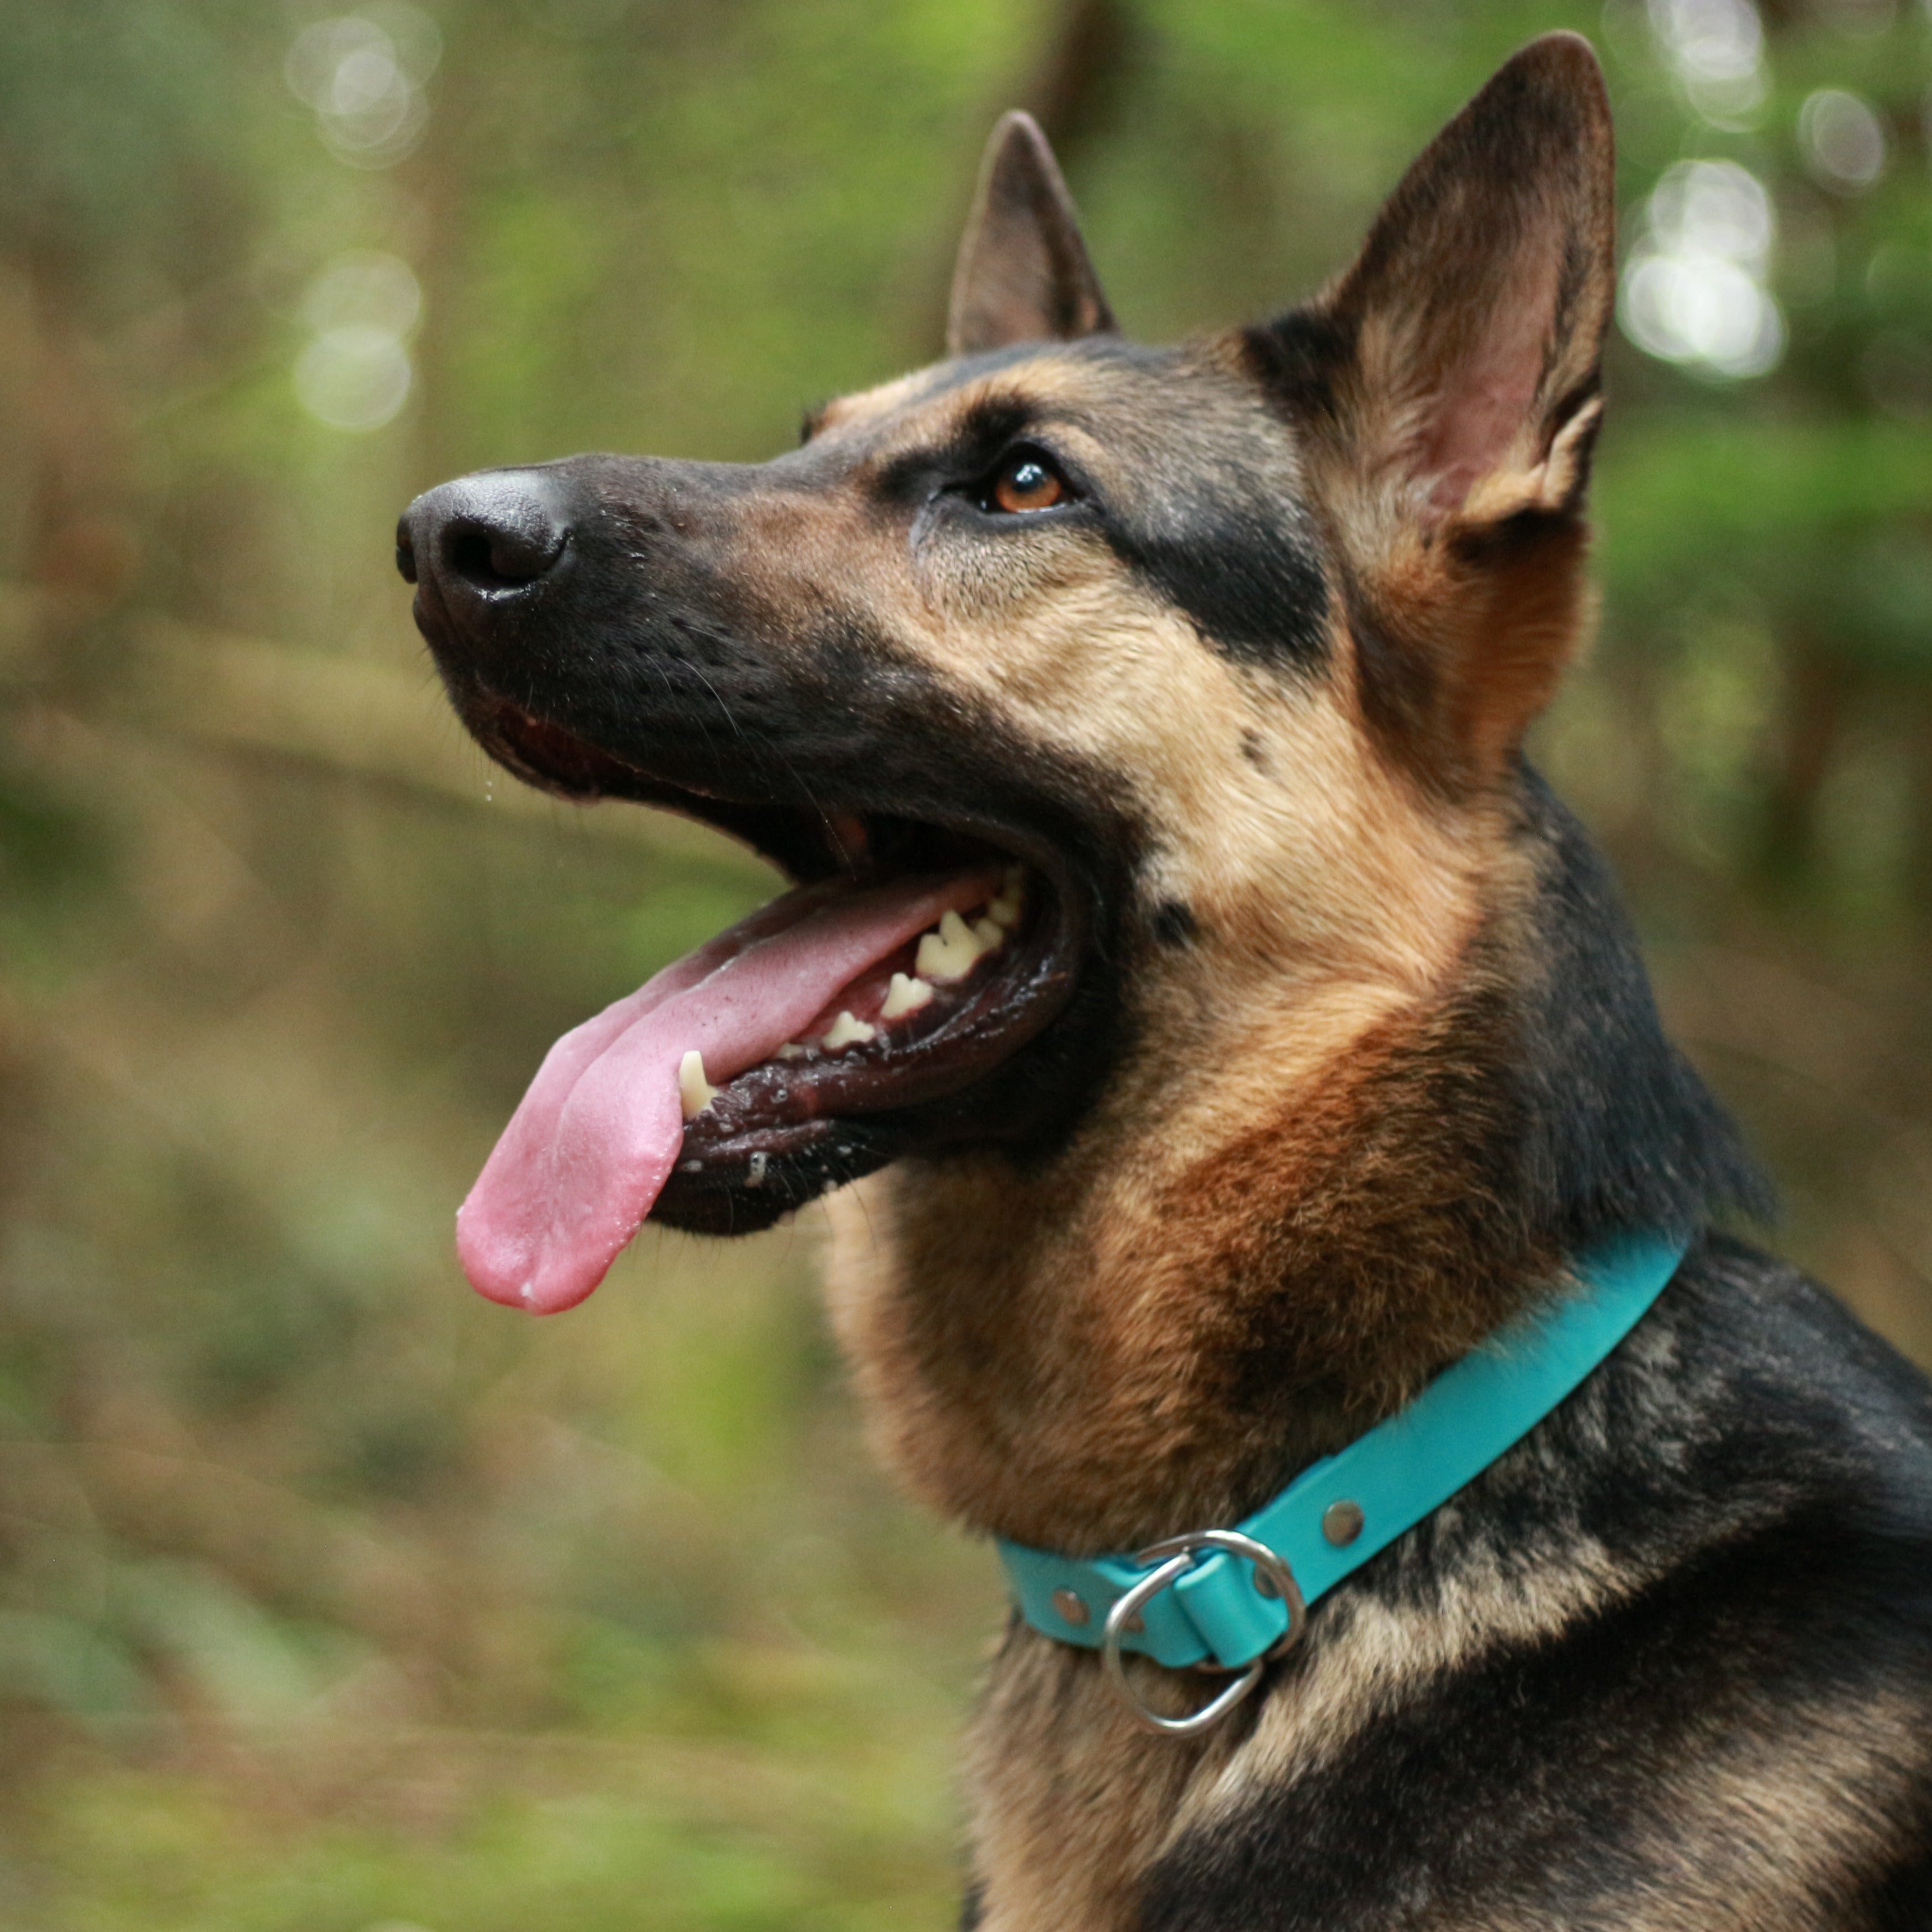 Shepherd wearing a Blue Biothane Slip Dog Collar